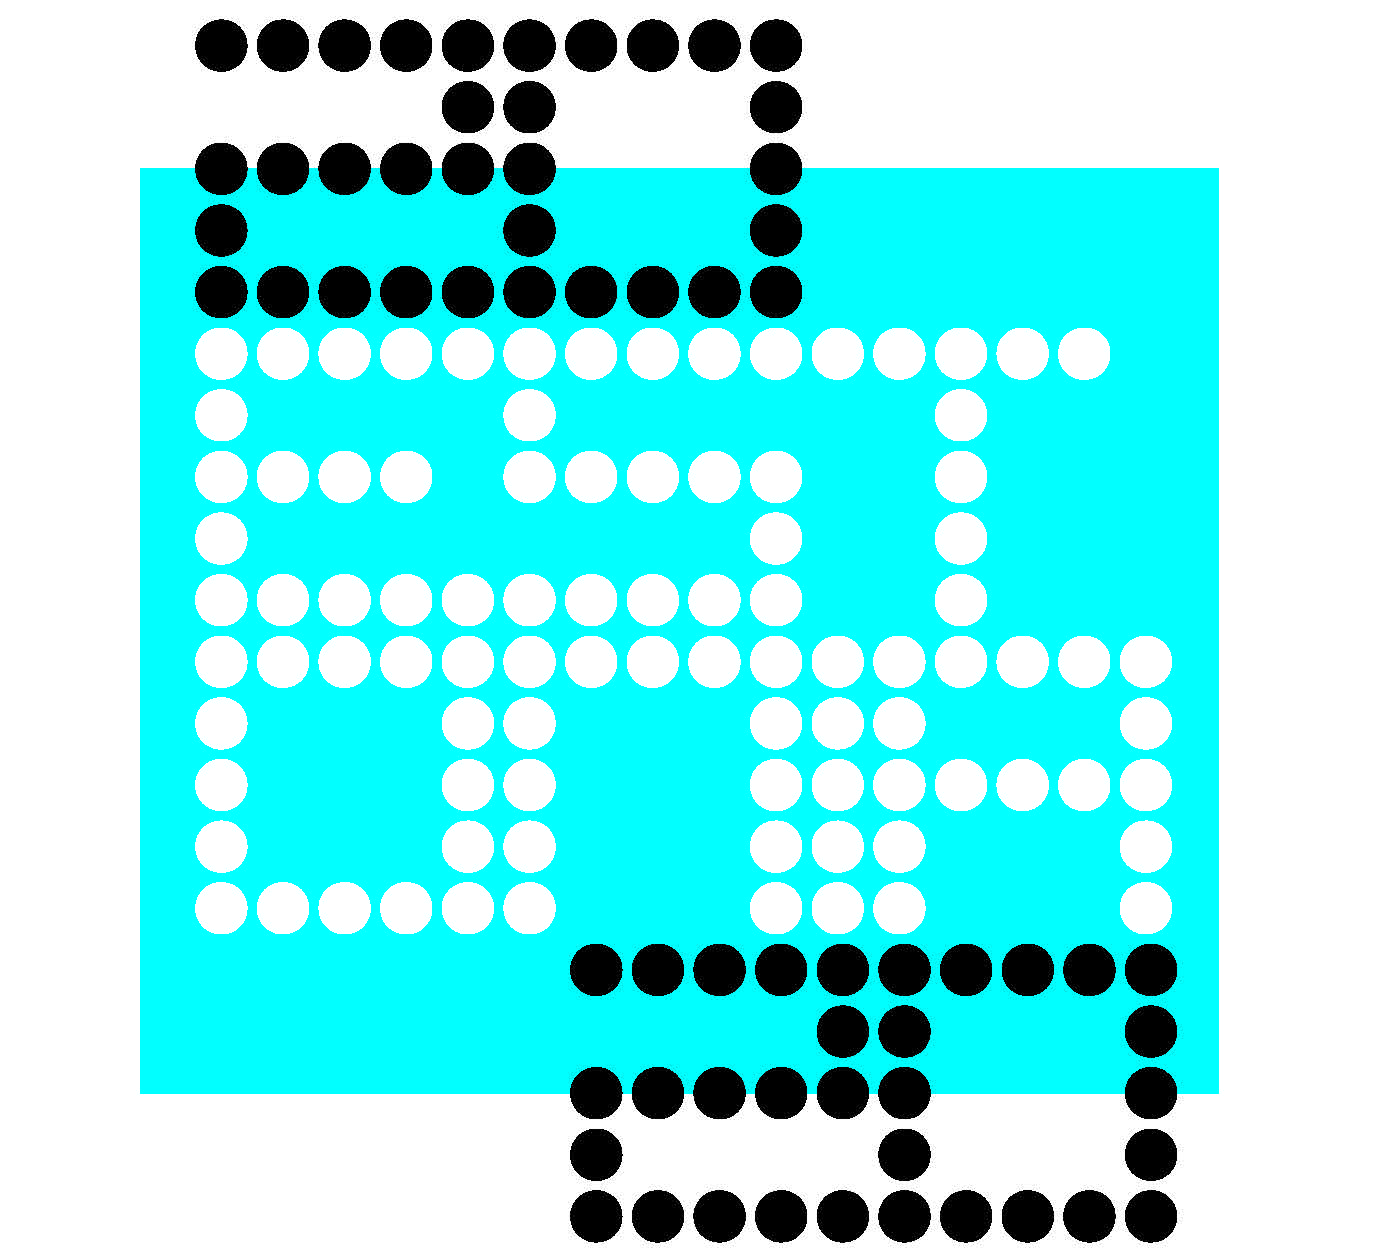 Estonia 2020 logo